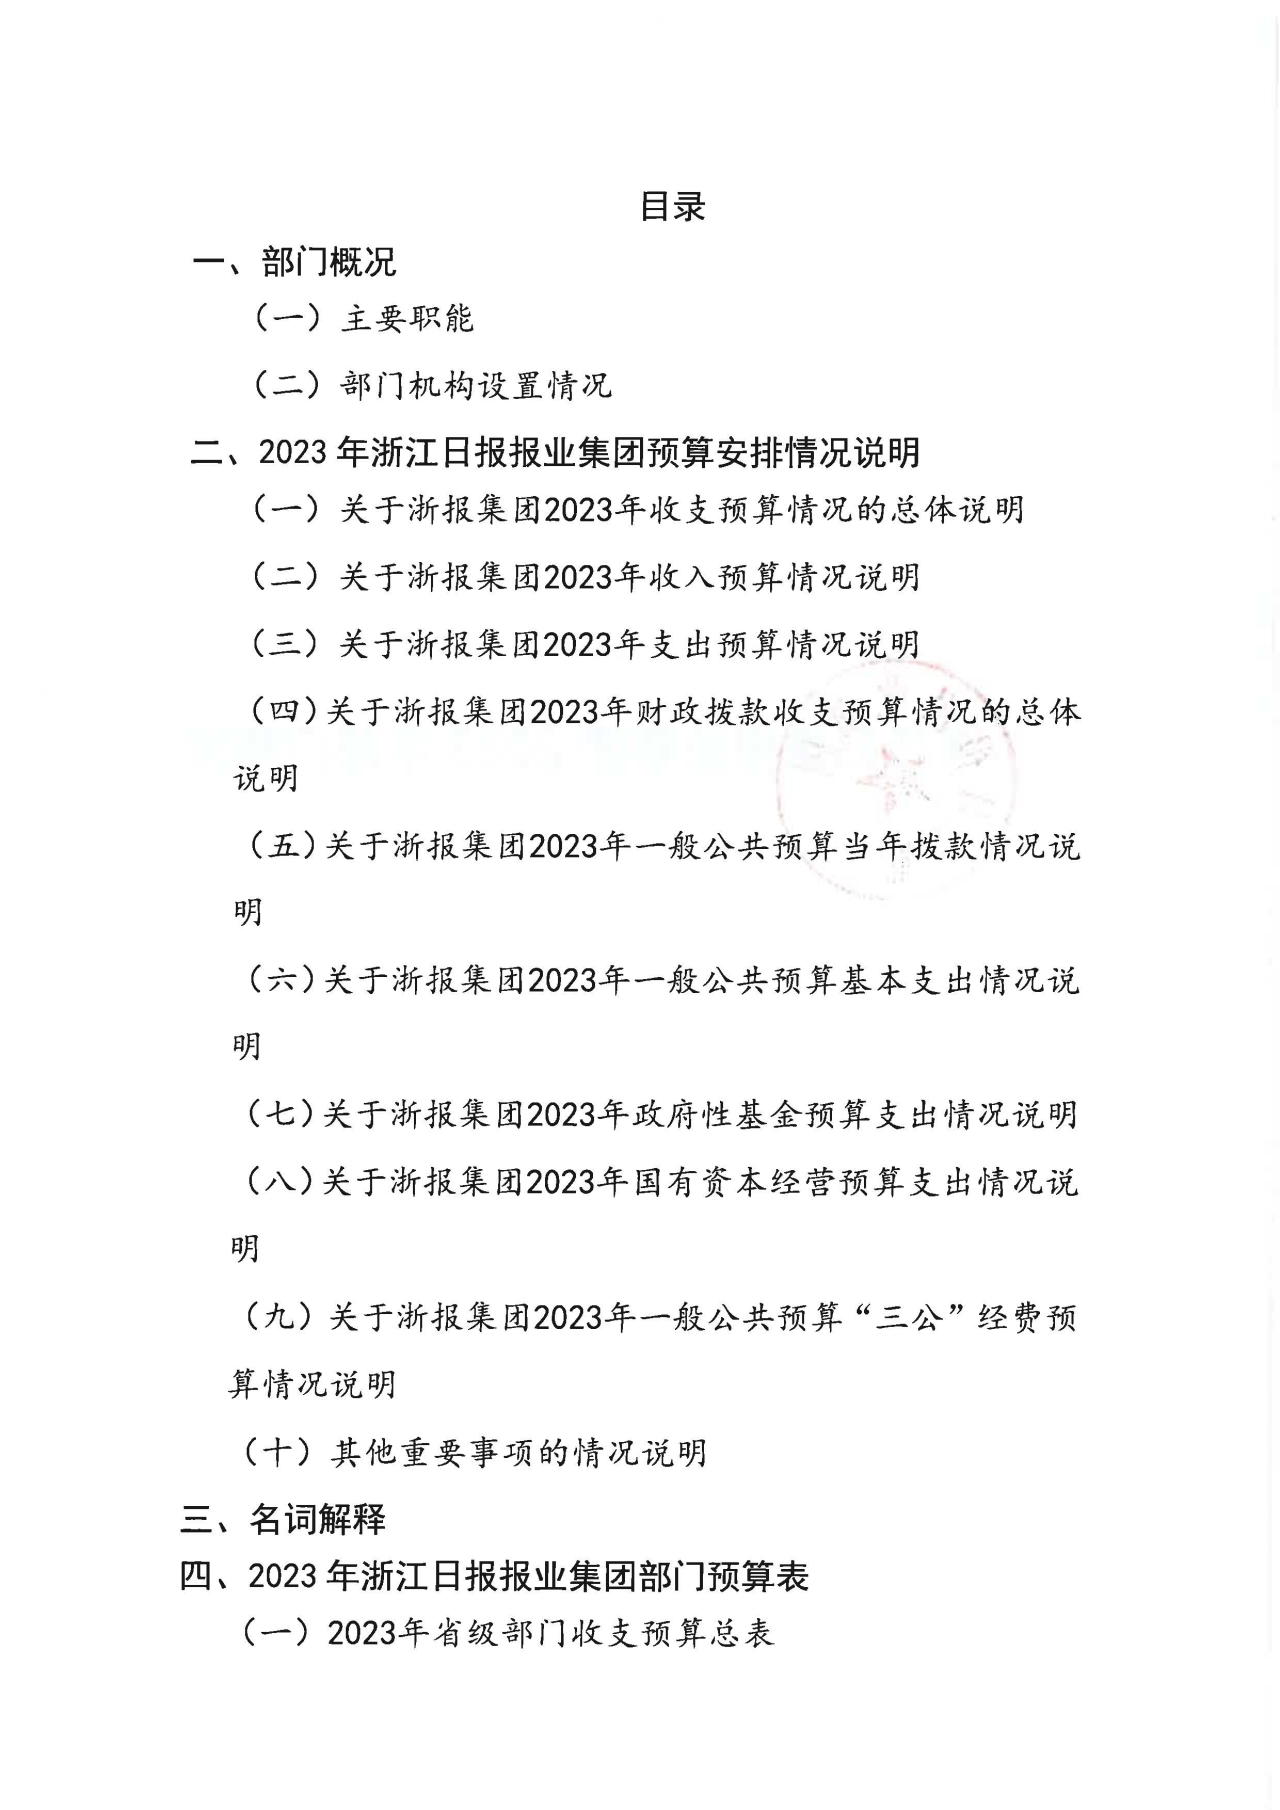 浙江日报报业集团2023年部门预算公开_页面_02.jpg